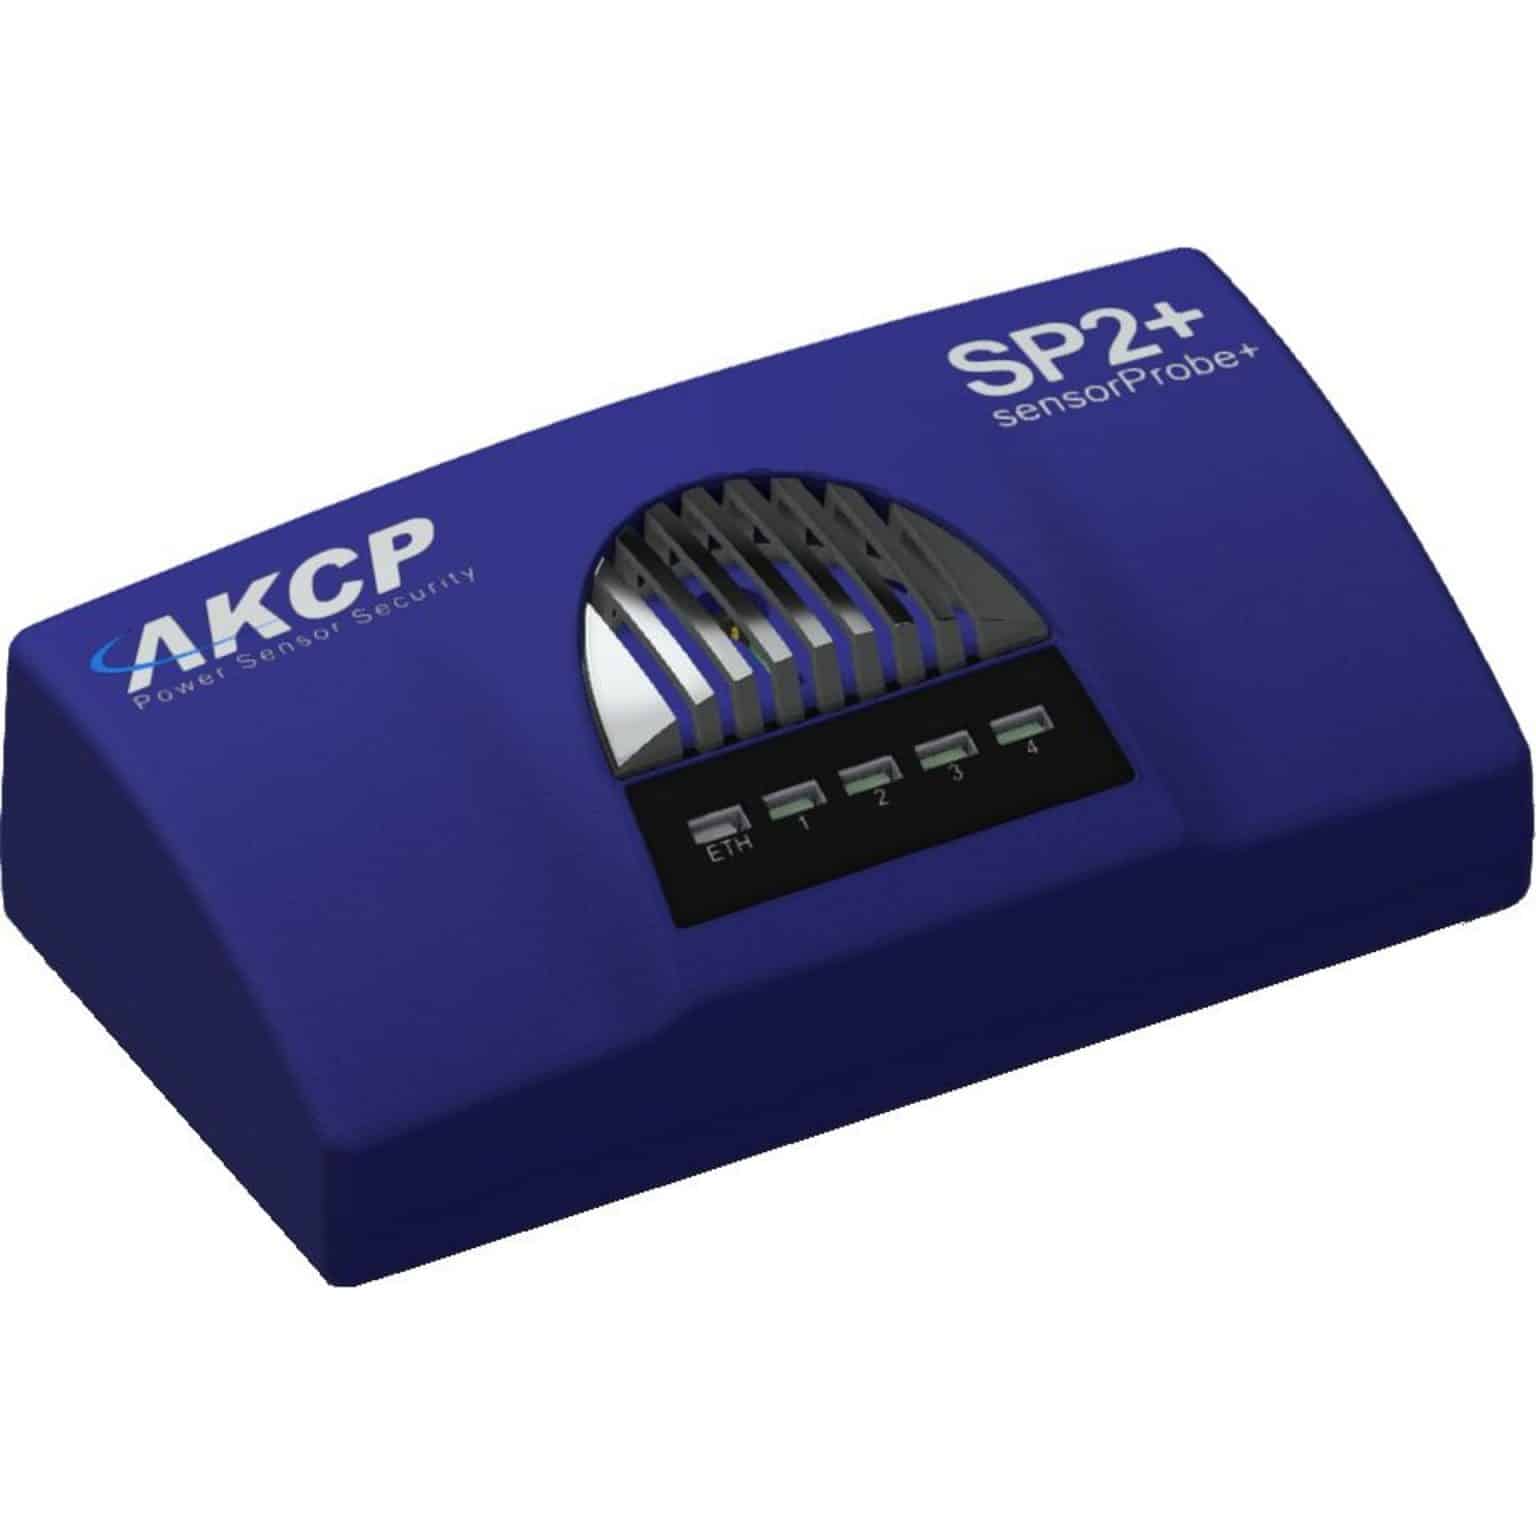 AKCP SP2+